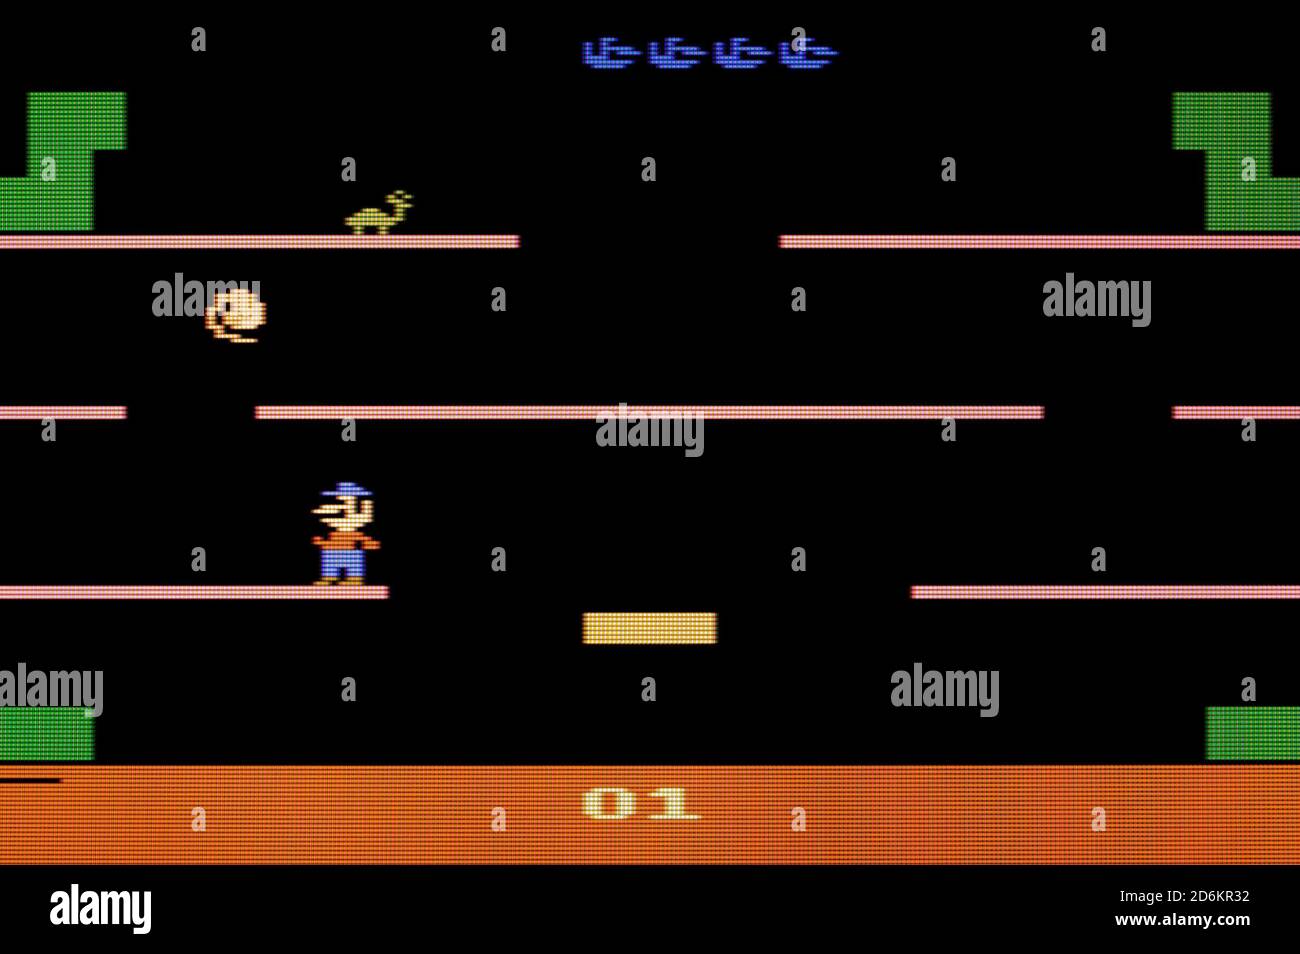 Mario Bros - Atari 2600 VCS Videogame - Editorial use only Stock Photo